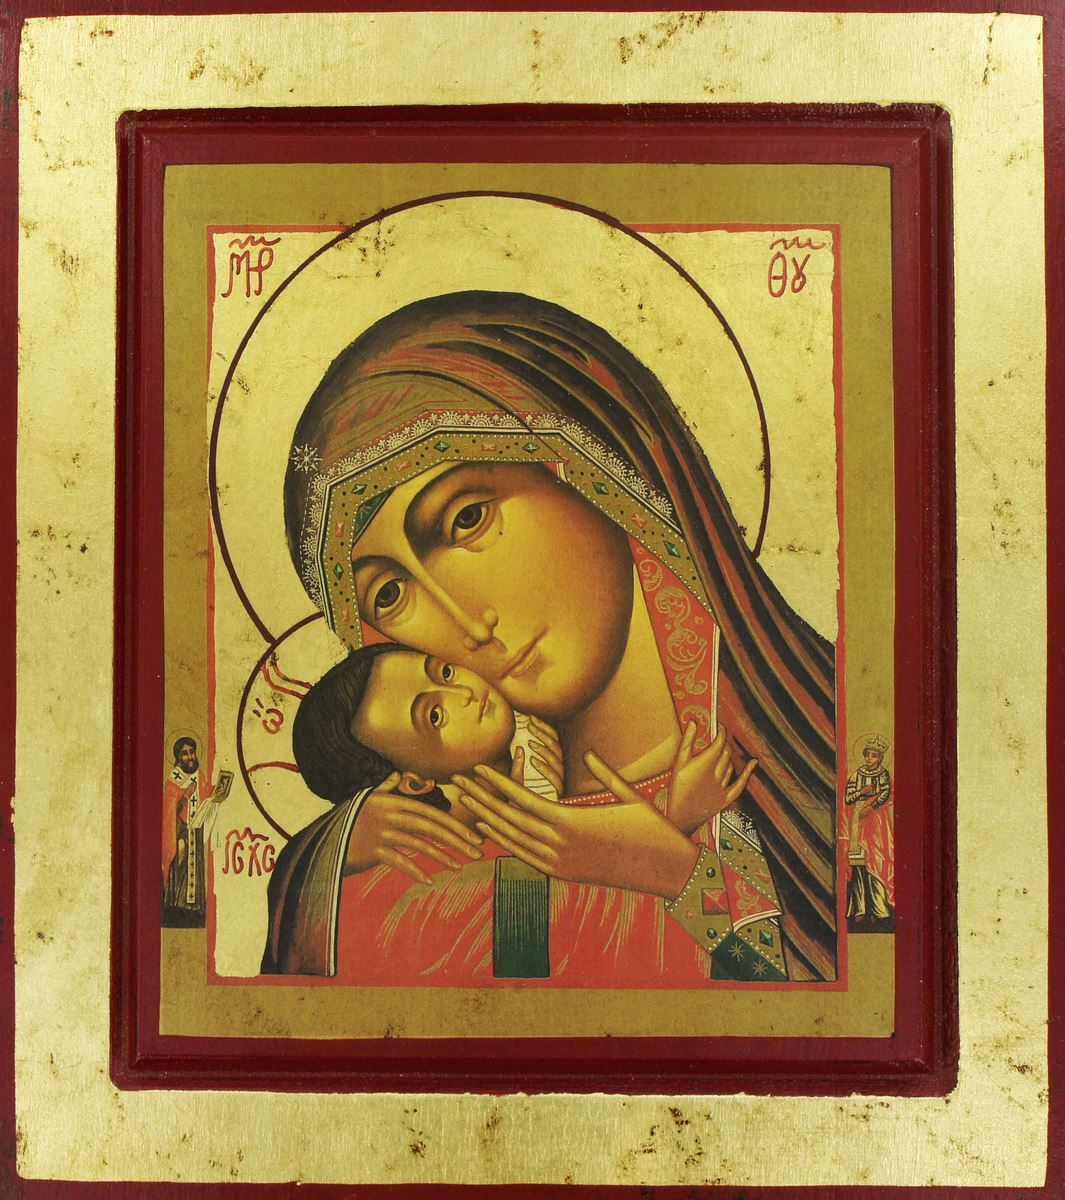 icona madonna di korsun, icona in stile arte bizantina, icona su legno rifinita con aureole, scritte e bordure fatte a mano, produzione greca - 14 x 12,5 cm